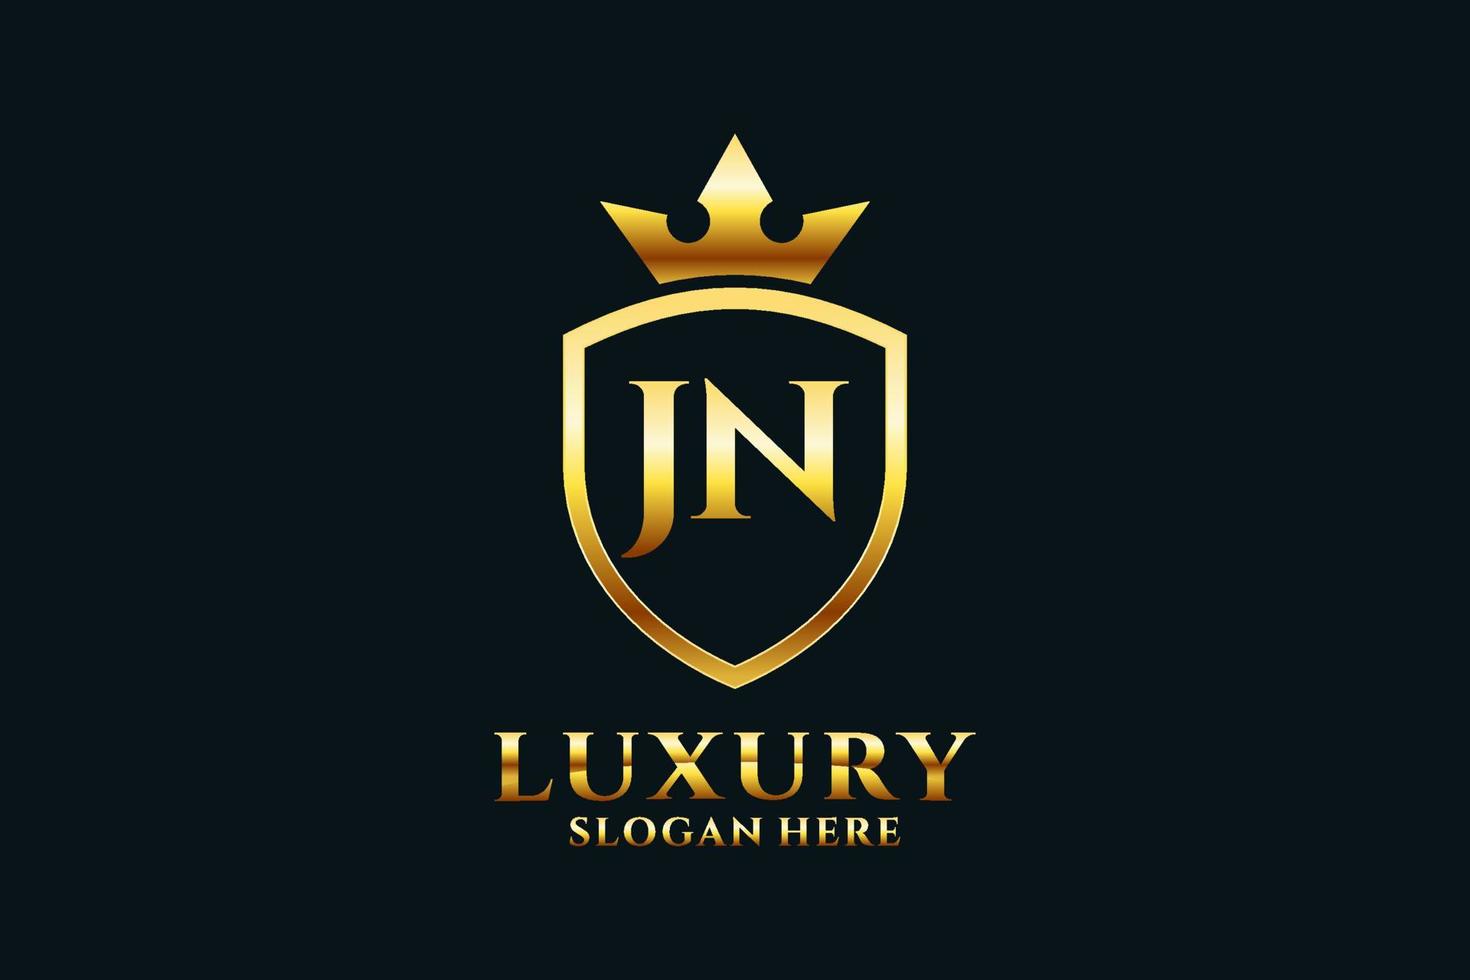 logo monogramme de luxe élégant initial jn ou modèle de badge avec volutes et couronne royale - parfait pour les projets de marque de luxe vecteur